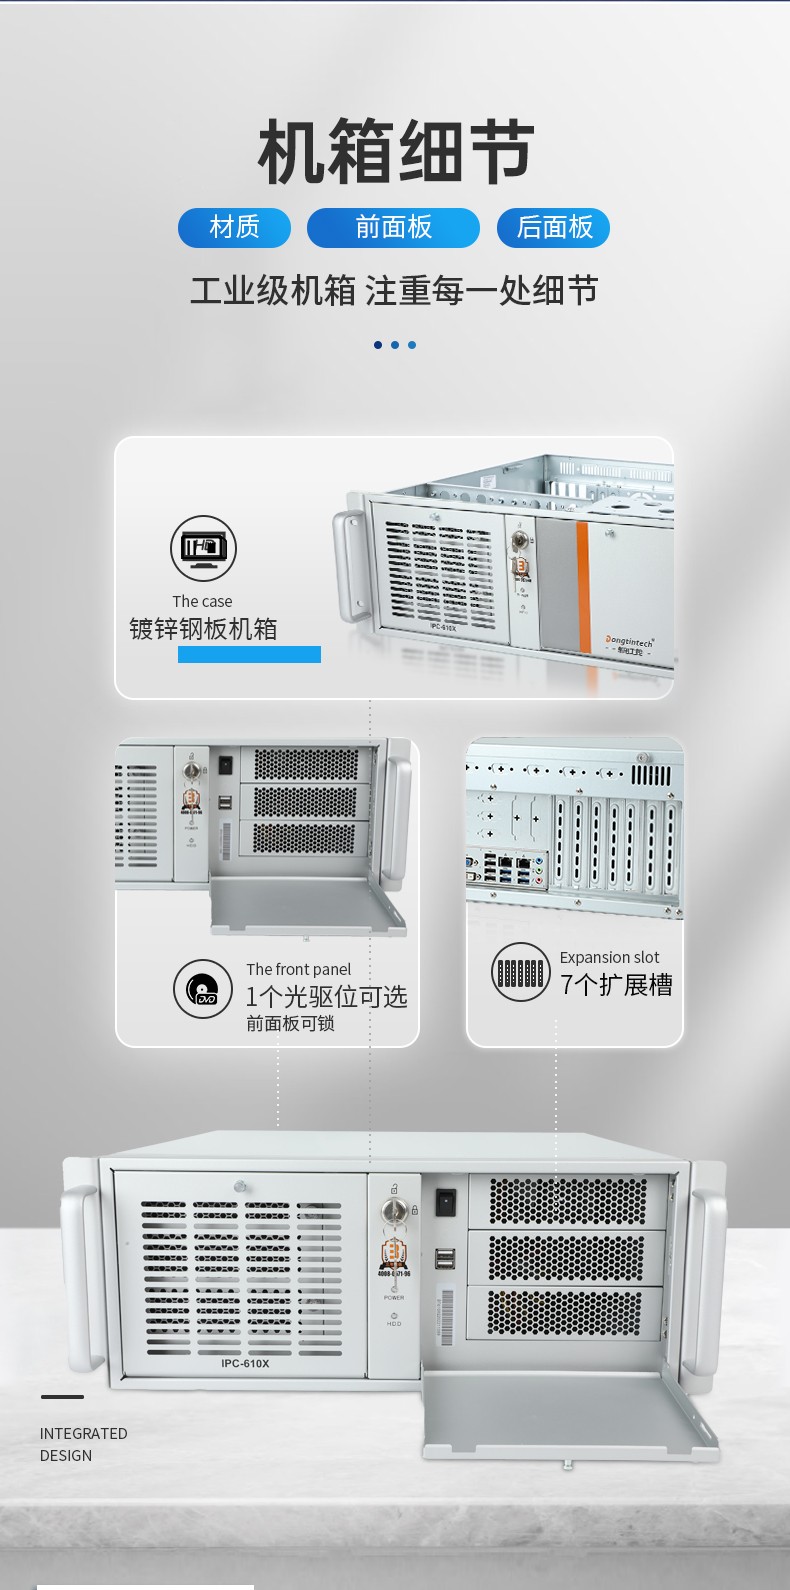 国产化工控机,中国兆芯处理器,DT-610X-U6780MA.jpg